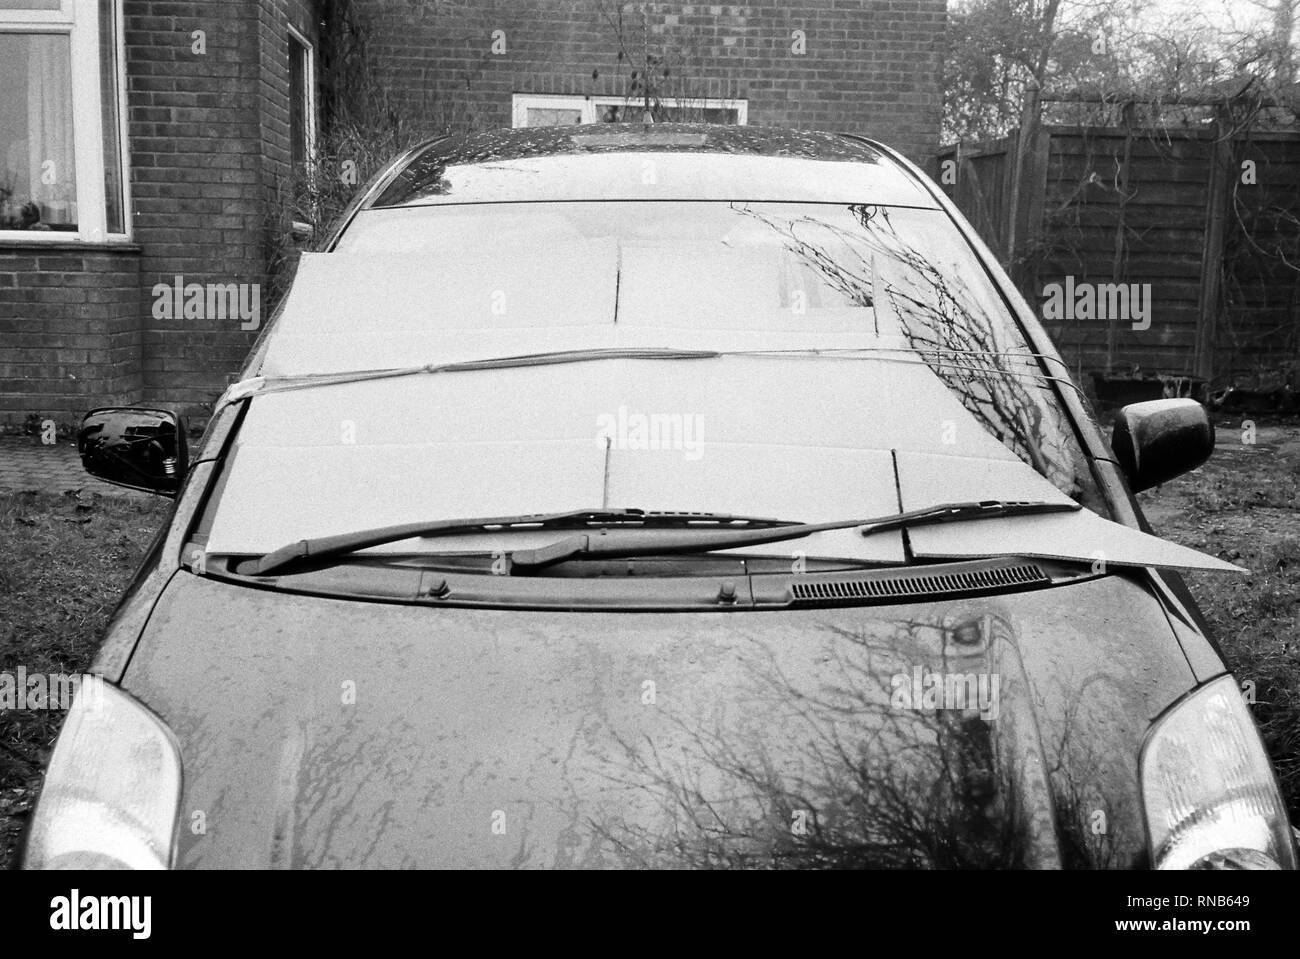 Toyota de carton sur le pare-brise pour éviter le gel. Hattingley,  Medstead, Alton, Hampshire, Angleterre, Royaume-Uni Photo Stock - Alamy